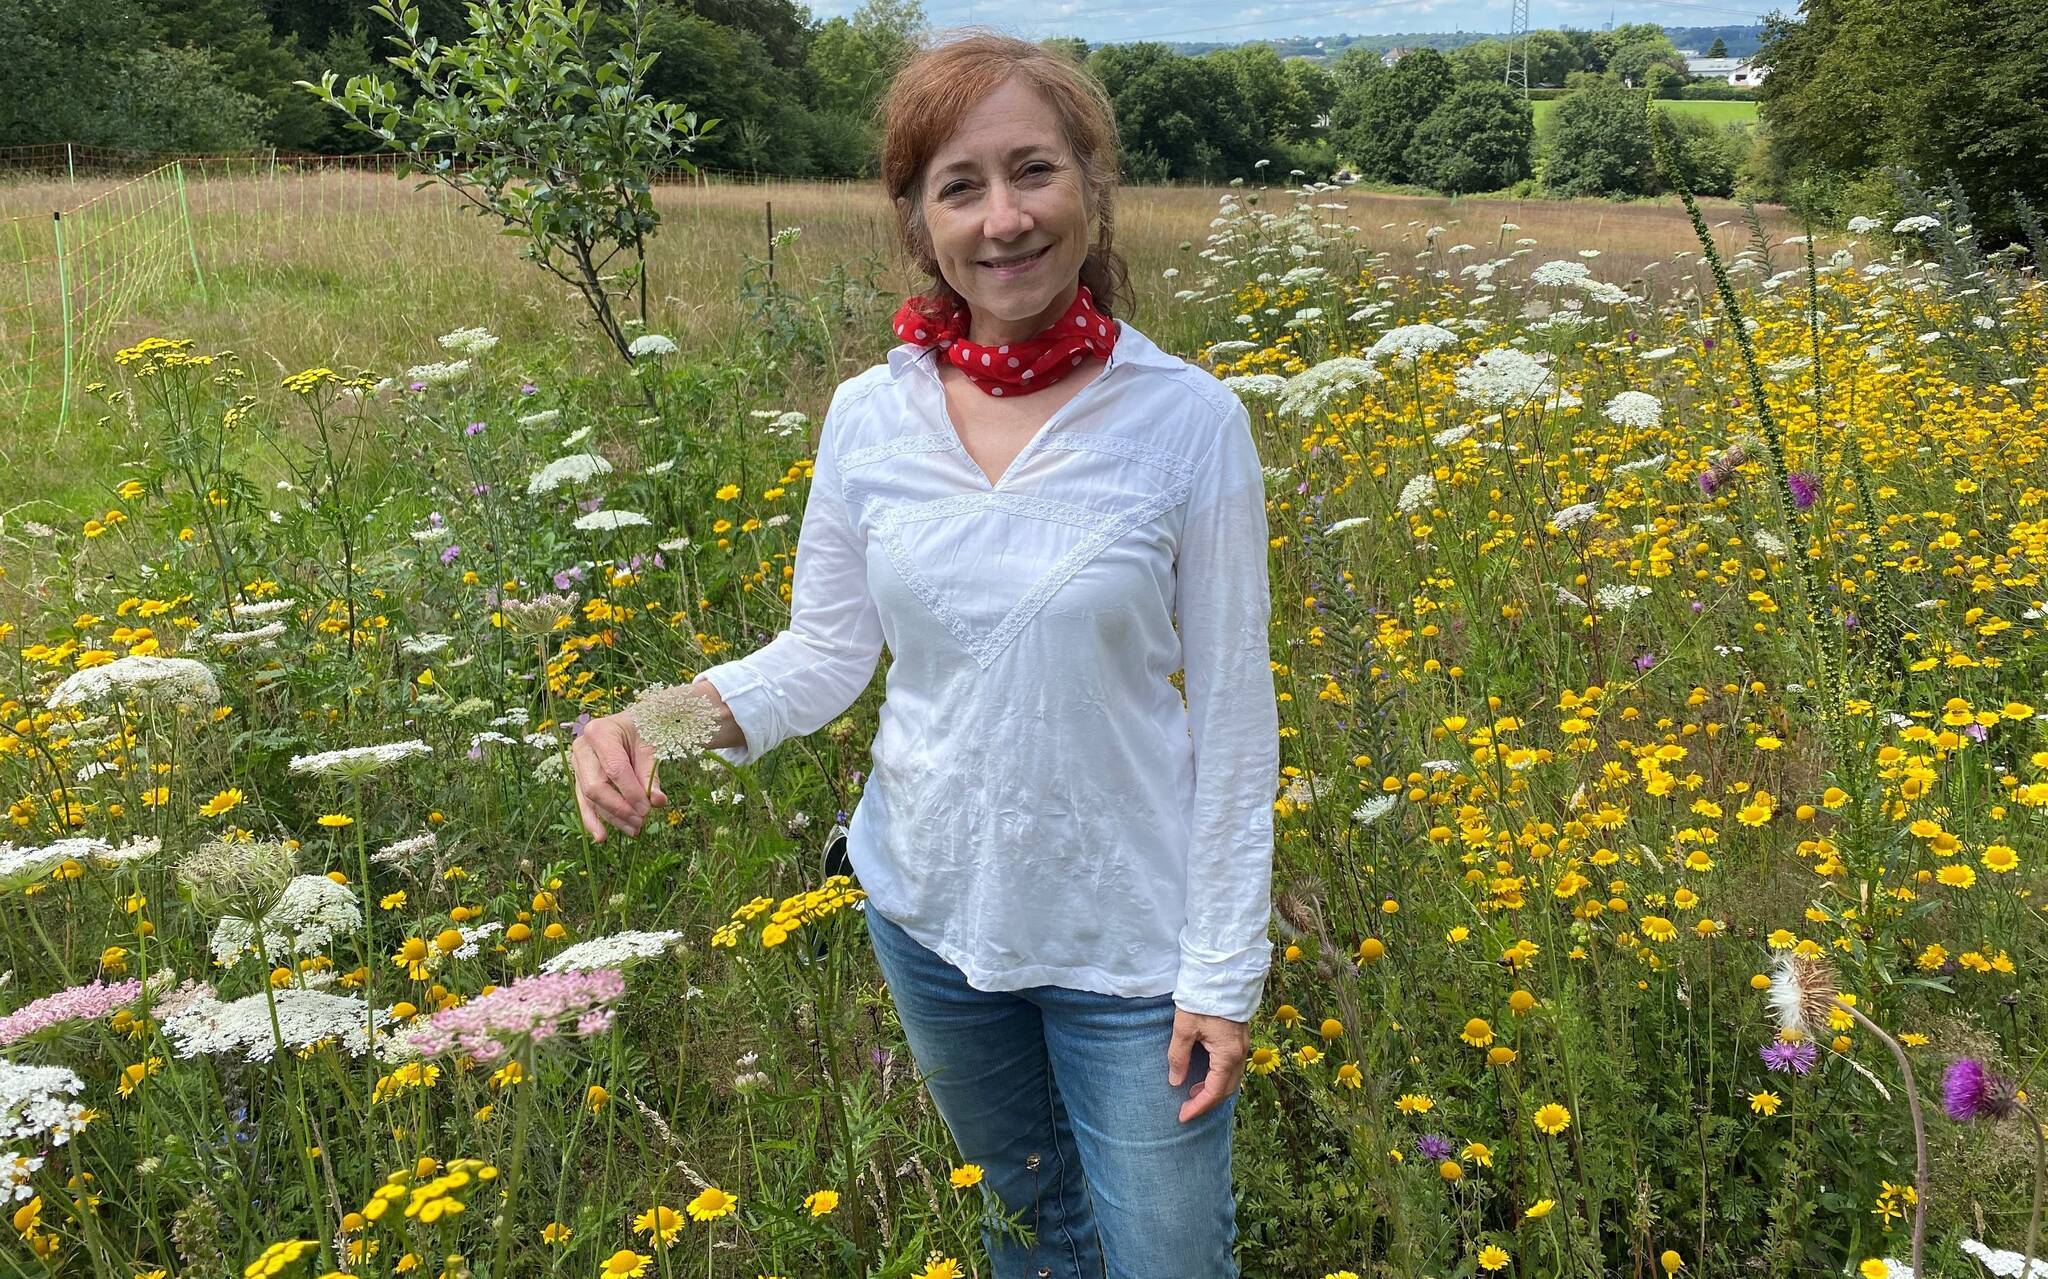  Simone Dahlmann-Buscher ist die 2. Vorsitzende des Vereins „Bewusst leben“, der sich im Apfelhain an der Triebelsheide trifft. 